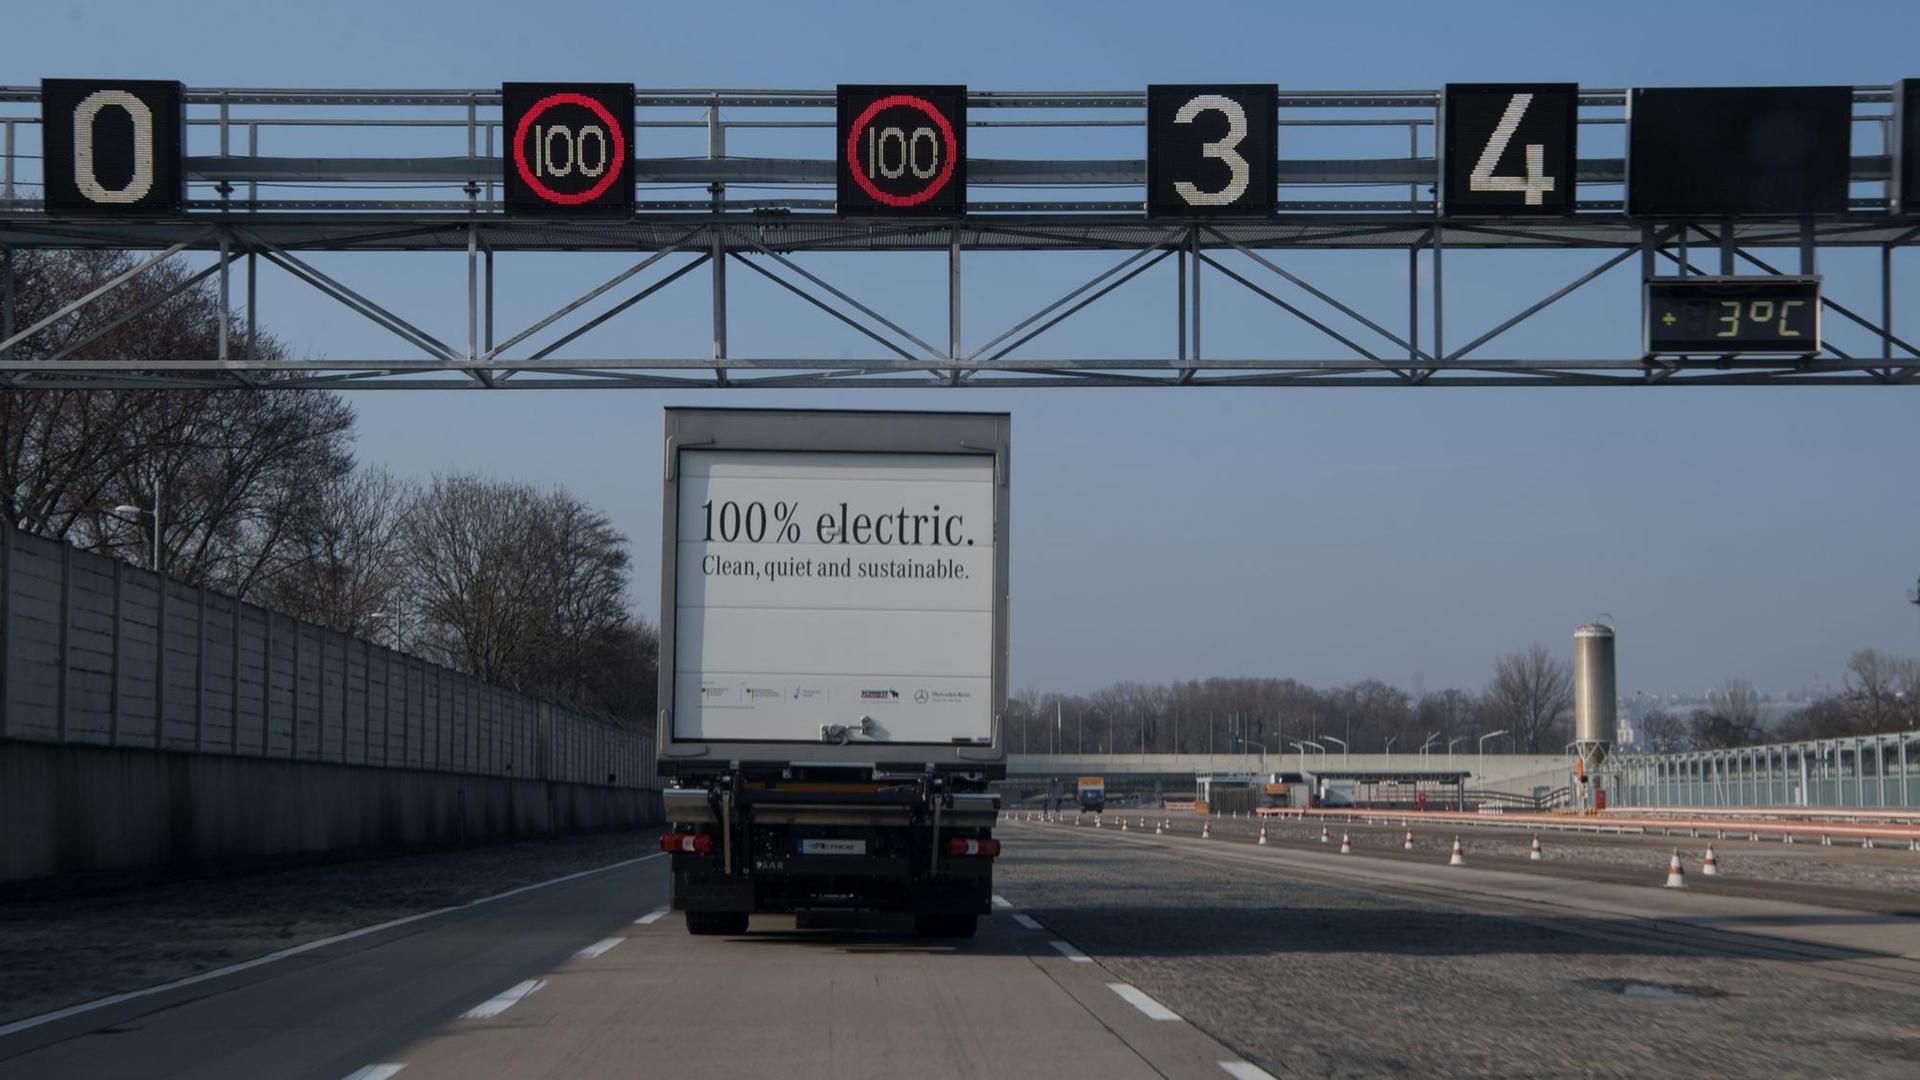 Ein Elektro-Lastwagen eActros von Mercedes-Benz fährt nach der Jahrespressekonferenz der Daimler-Nutzfahrzeugsparte am 21.02.2018 auf der Daimler-Teststrecke in Stuttgart.